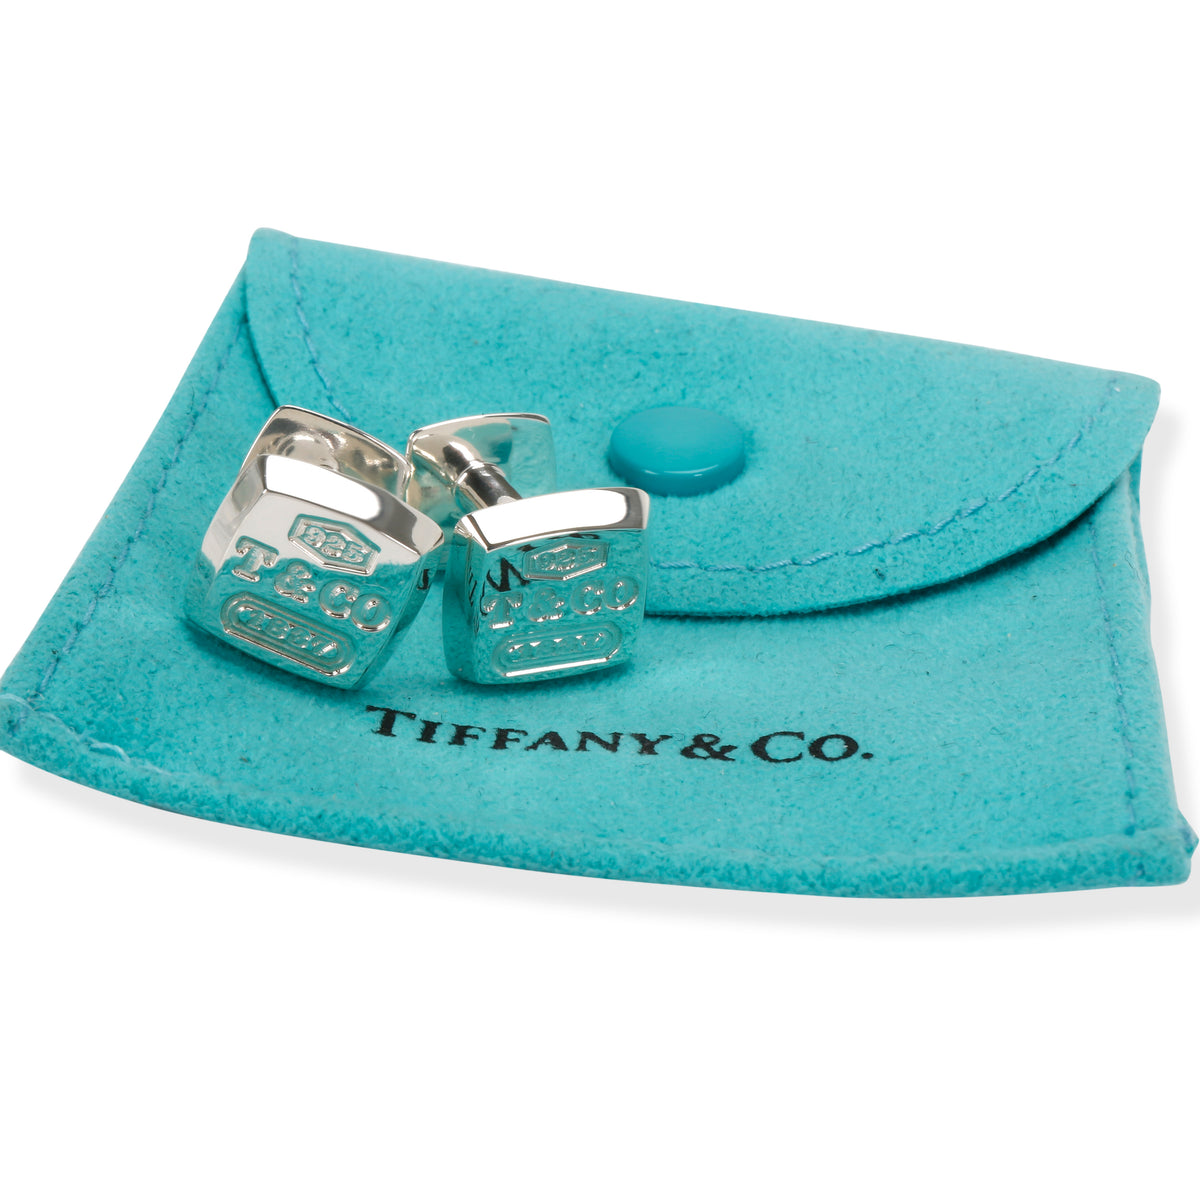 Tiffany & Co. 1837 Cufflinks in  Sterling Silver